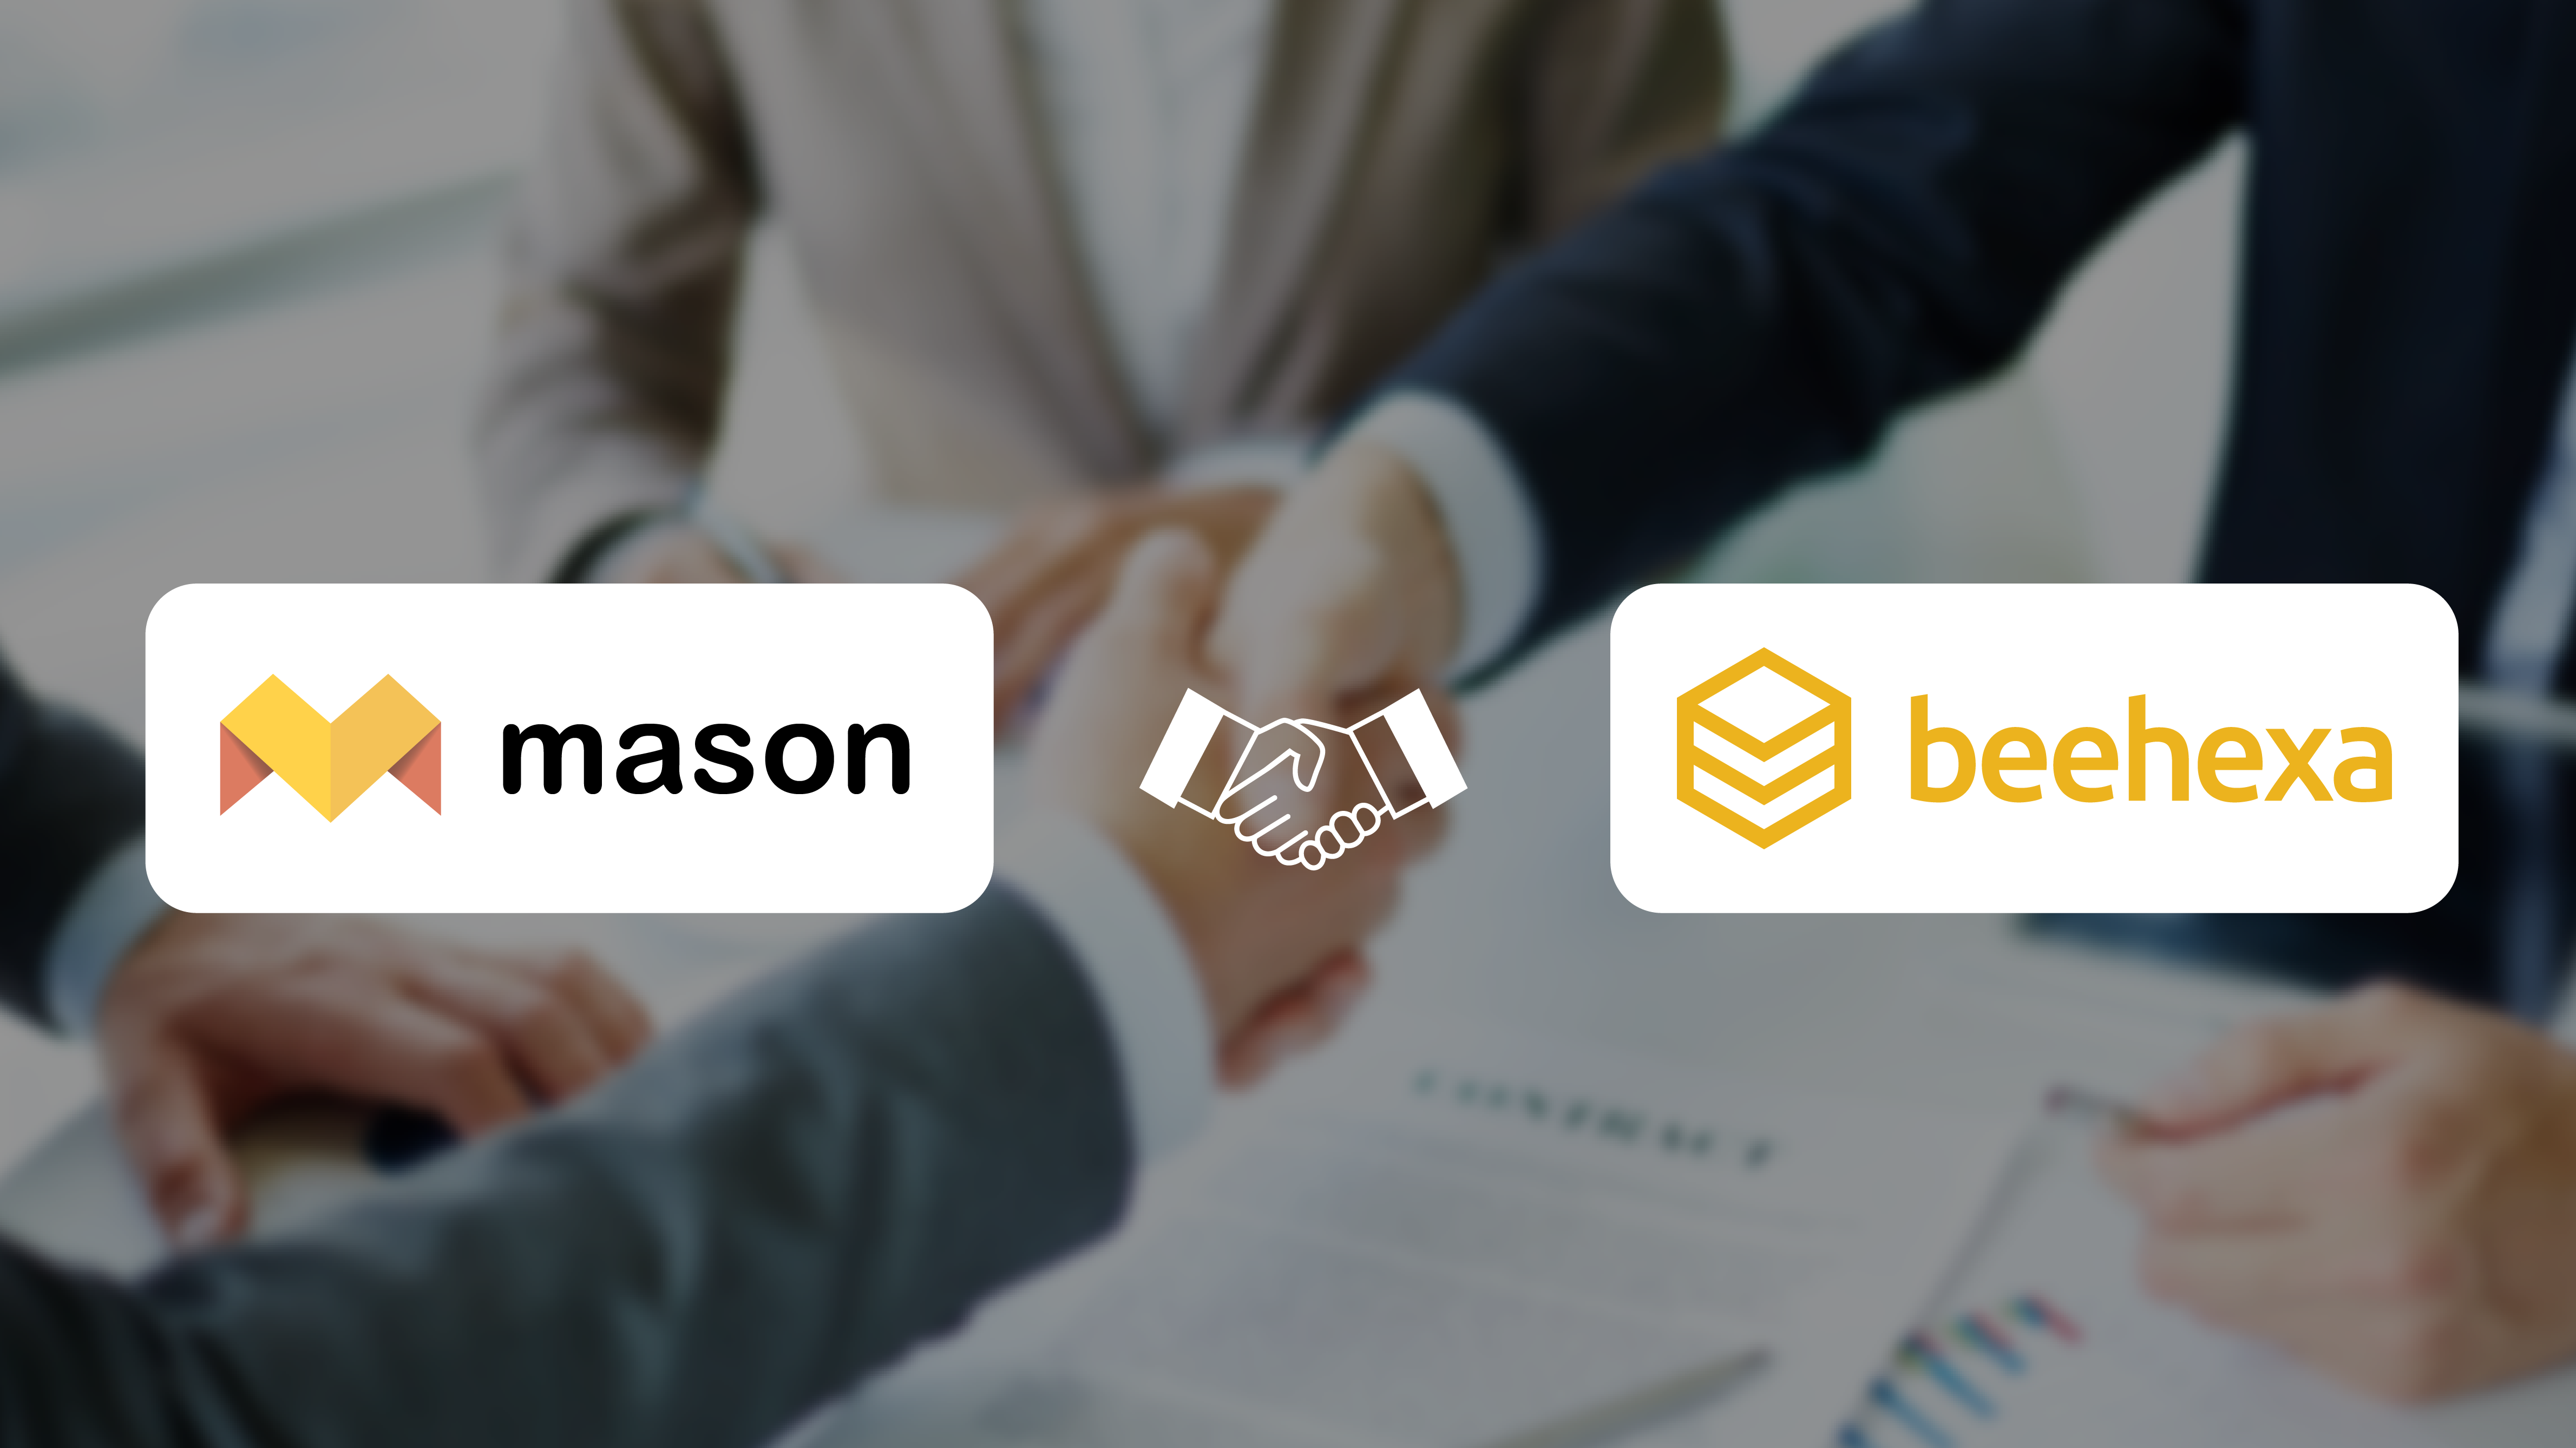 Mason And Beehexa Partnership